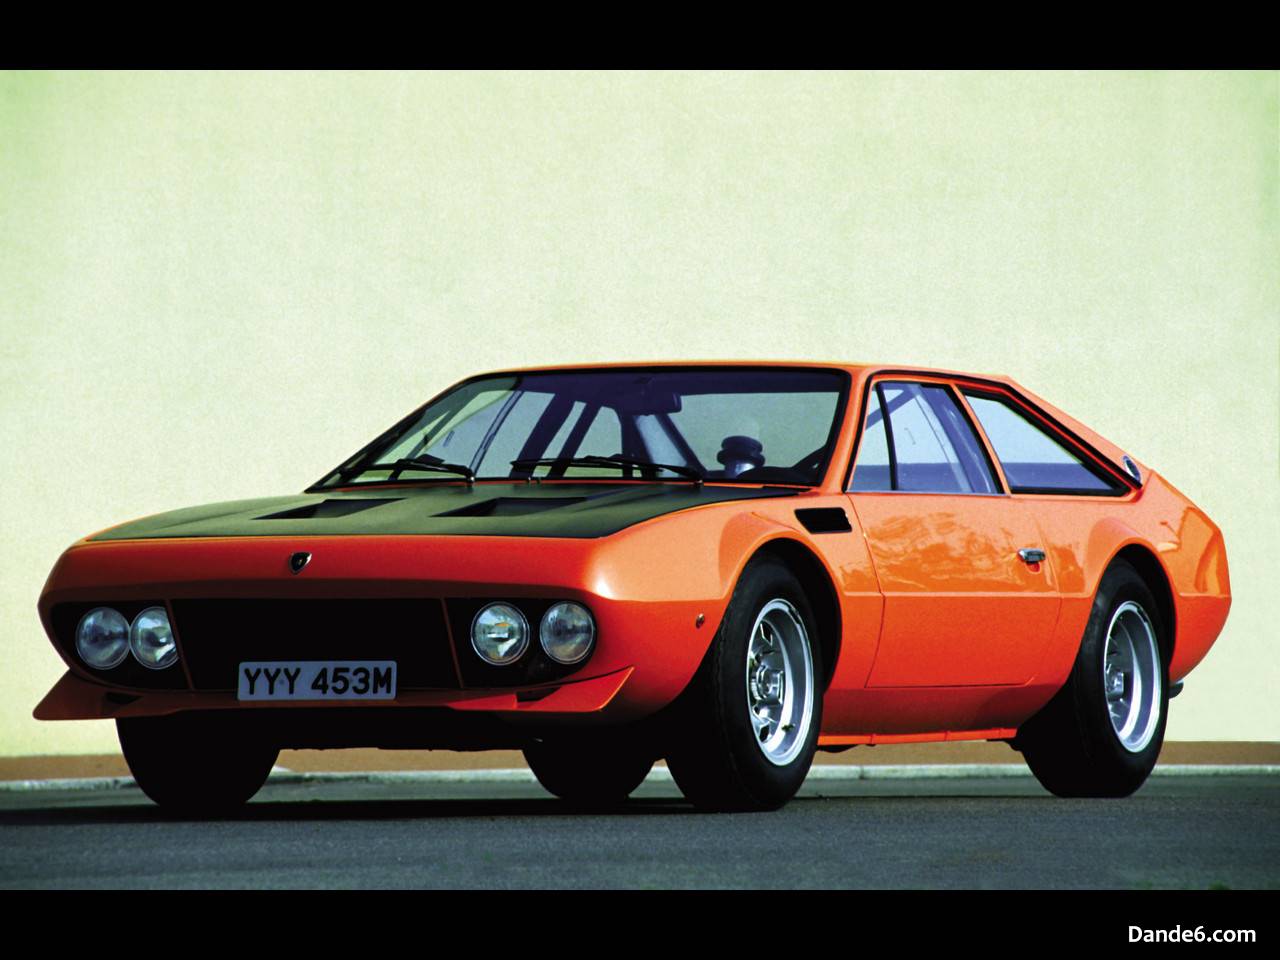 1973 Lamborghini Jarama